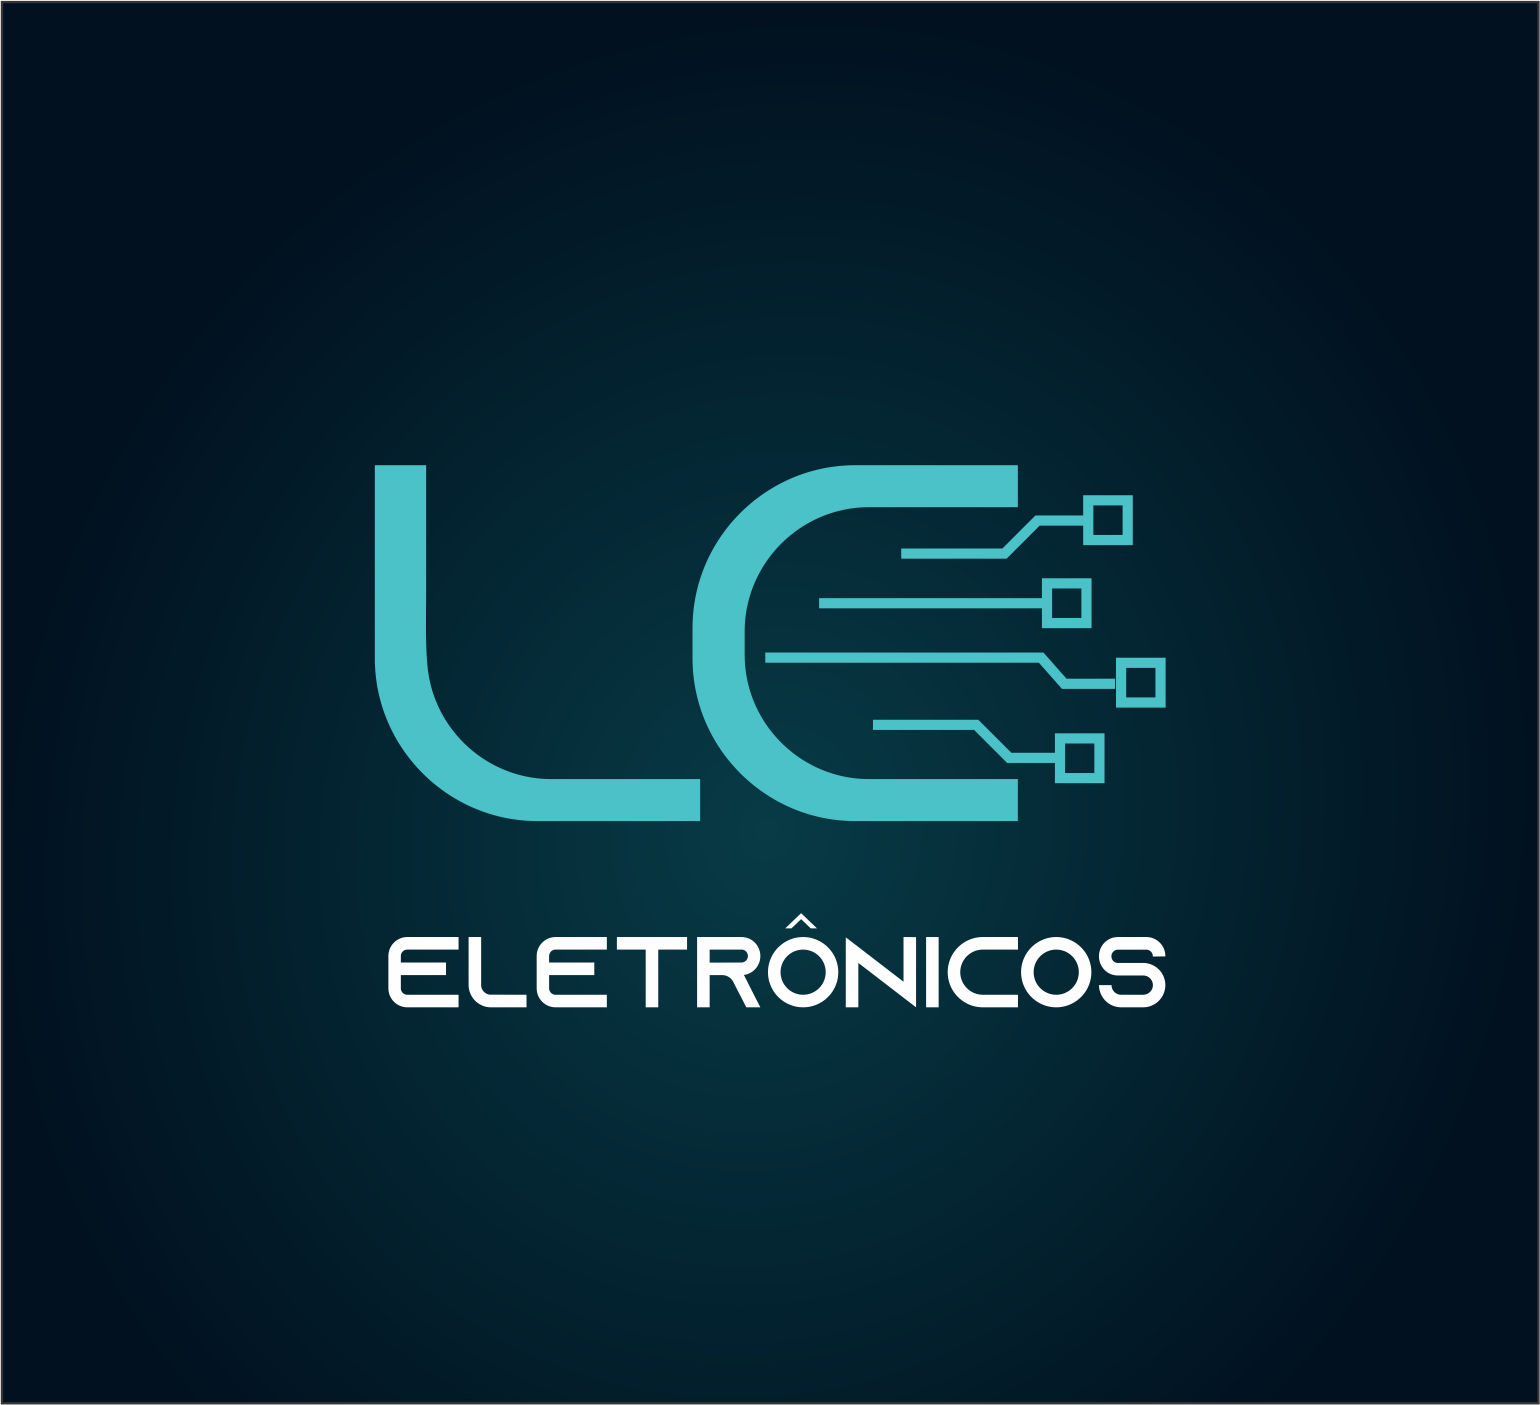 LC Eletrônicos - Segurança Eletrônica